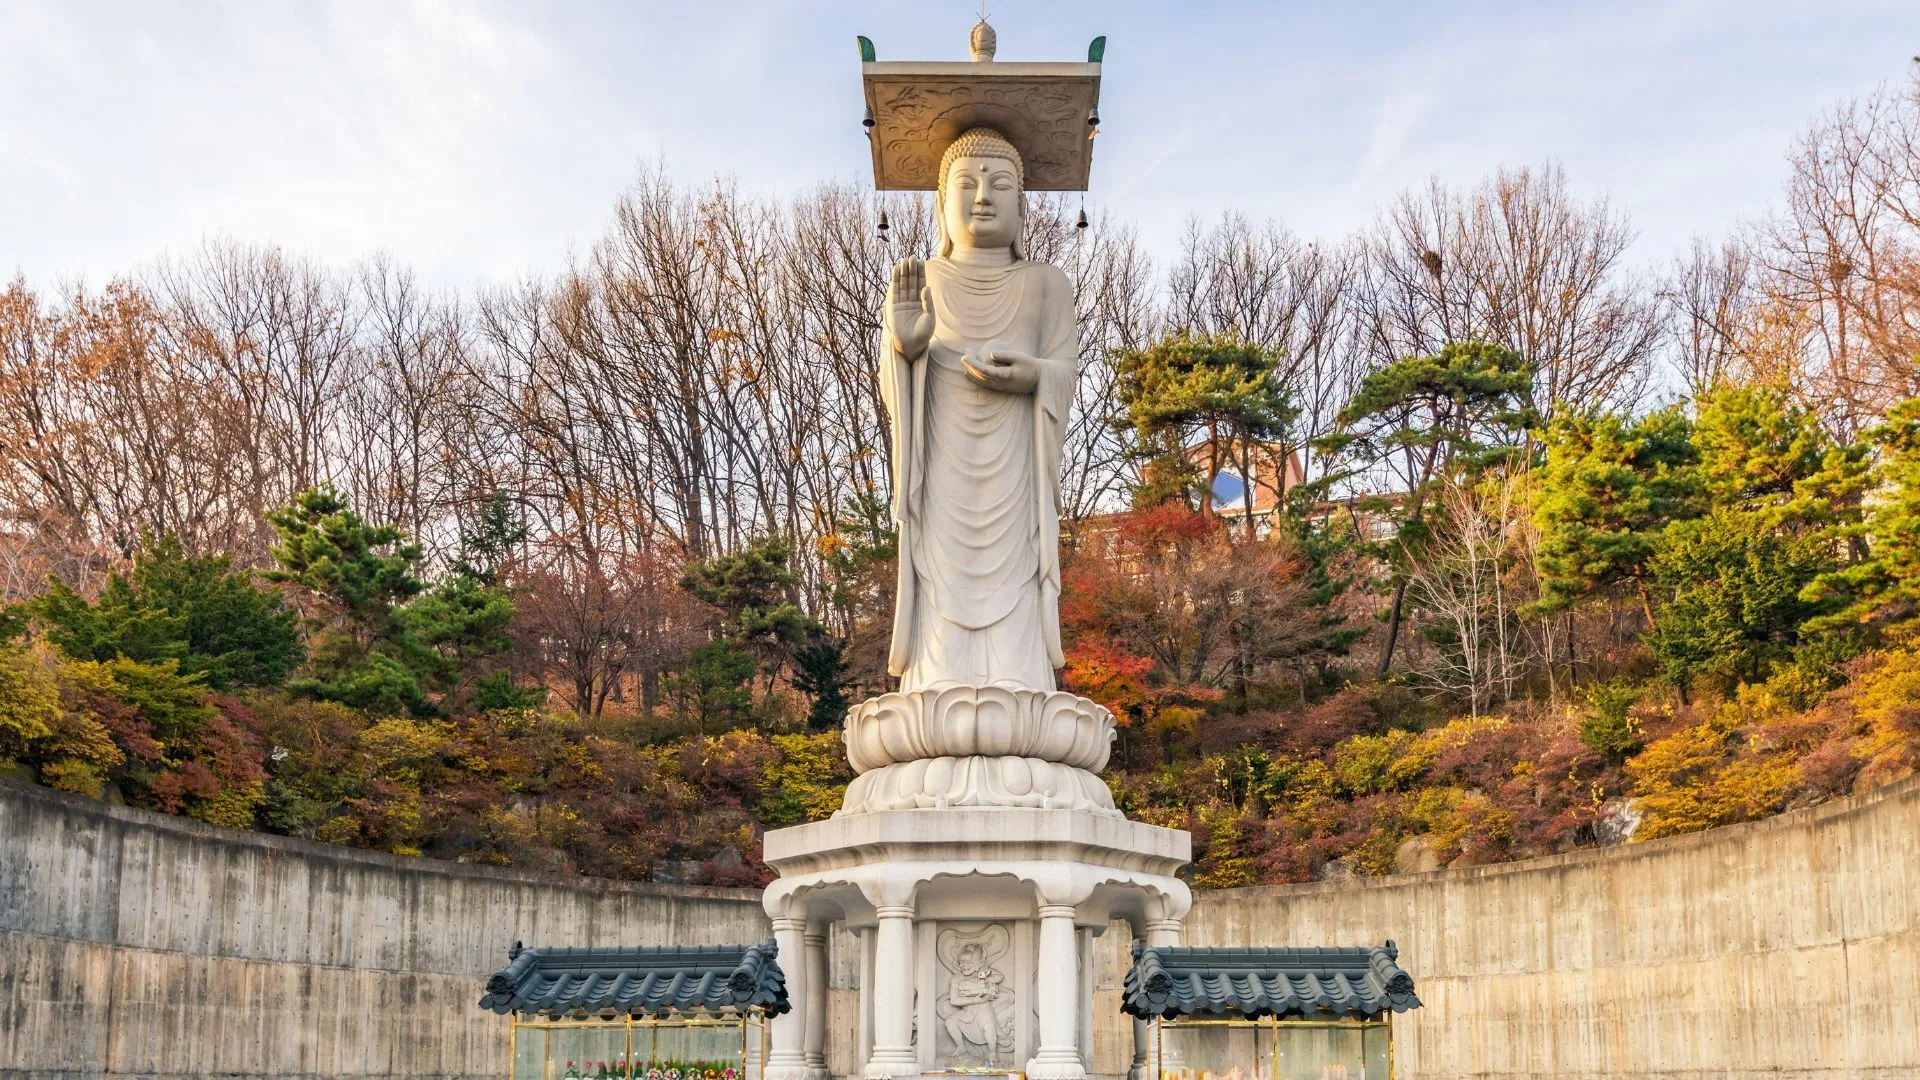 Đền Bongeunsa Các ngôi chùa ở Hàn Quốc Tín dụng hình ảnh: CJ Nattanai / Shutterstock Nằm trên sườn Núi Sudo, Chùa Bongeunsa cổ kính, được thành lập vào năm 794, nổi tiếng với bức tượng Phật Di Lặc cao 23 mét cao chót vót. Ngôi chùa có một bộ sưu tập phong phú gồm hơn 3.000 kinh Phật thuộc 13 loại.  Hàng năm, các nhà sư thực hiện nghi lễ Jeongdaebulsa vào ngày 9 tháng 8 âm lịch, một nghi lễ bao gồm lễ rước kinh và đọc Beopseongge (nghi lễ Phật giáo). Để có trải nghiệm độc đáo, du khách có thể tham gia chương trình kéo dài 48 giờ để có cái nhìn thoáng qua về cuộc sống tu viện, bao gồm trà đạo, lễ Phật giáo và thiền Thiền.